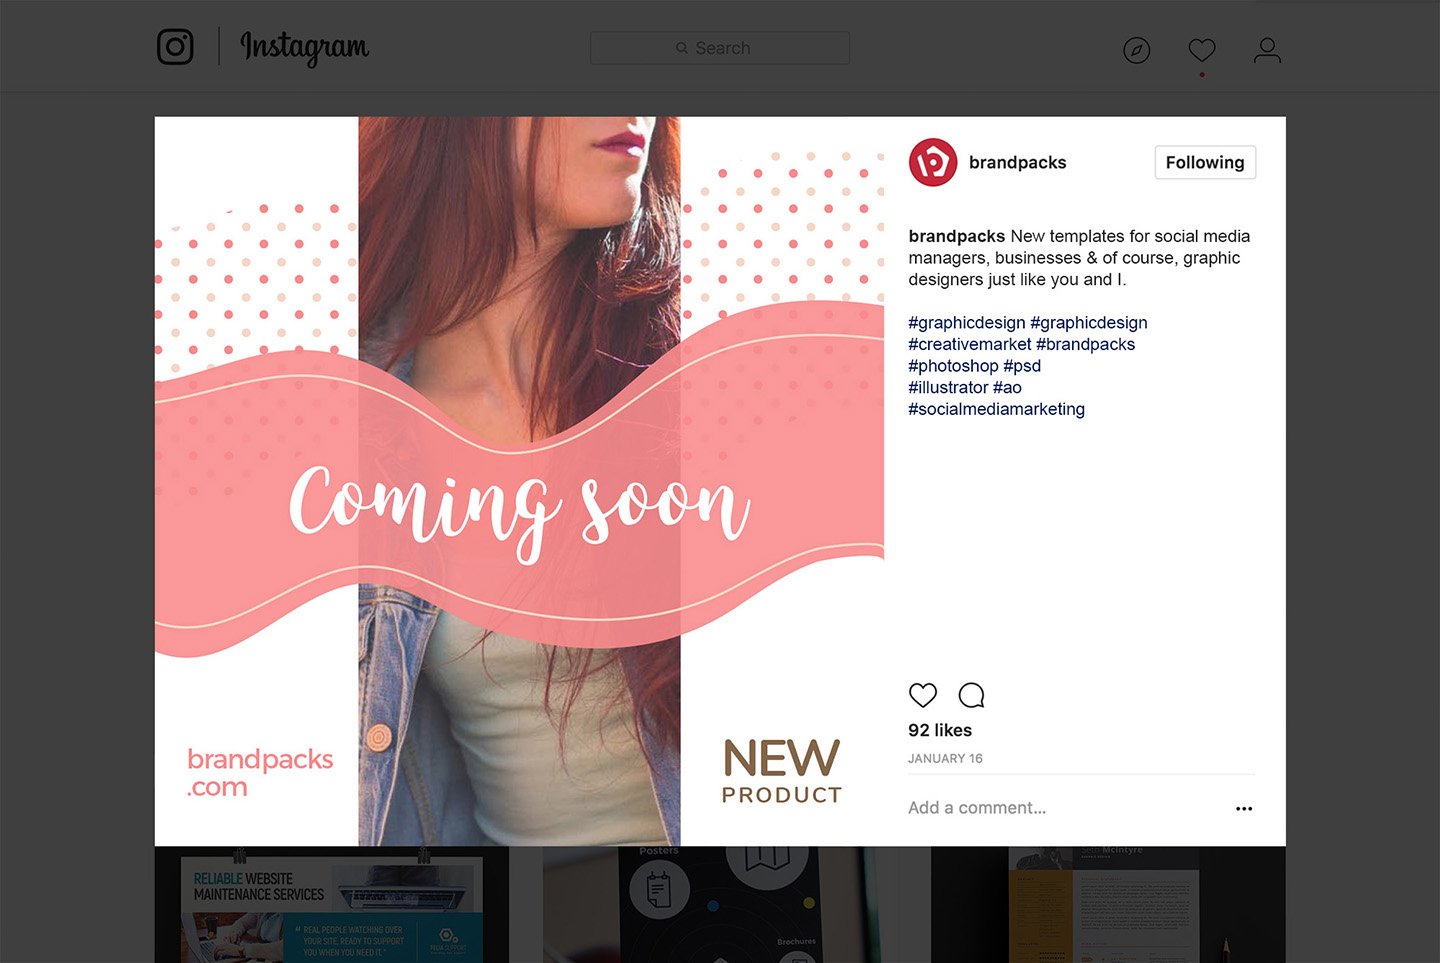 粉色系女性化妆品服装电商营销海报Instagram模板 Social Media Templates Pack Vol.5插图12